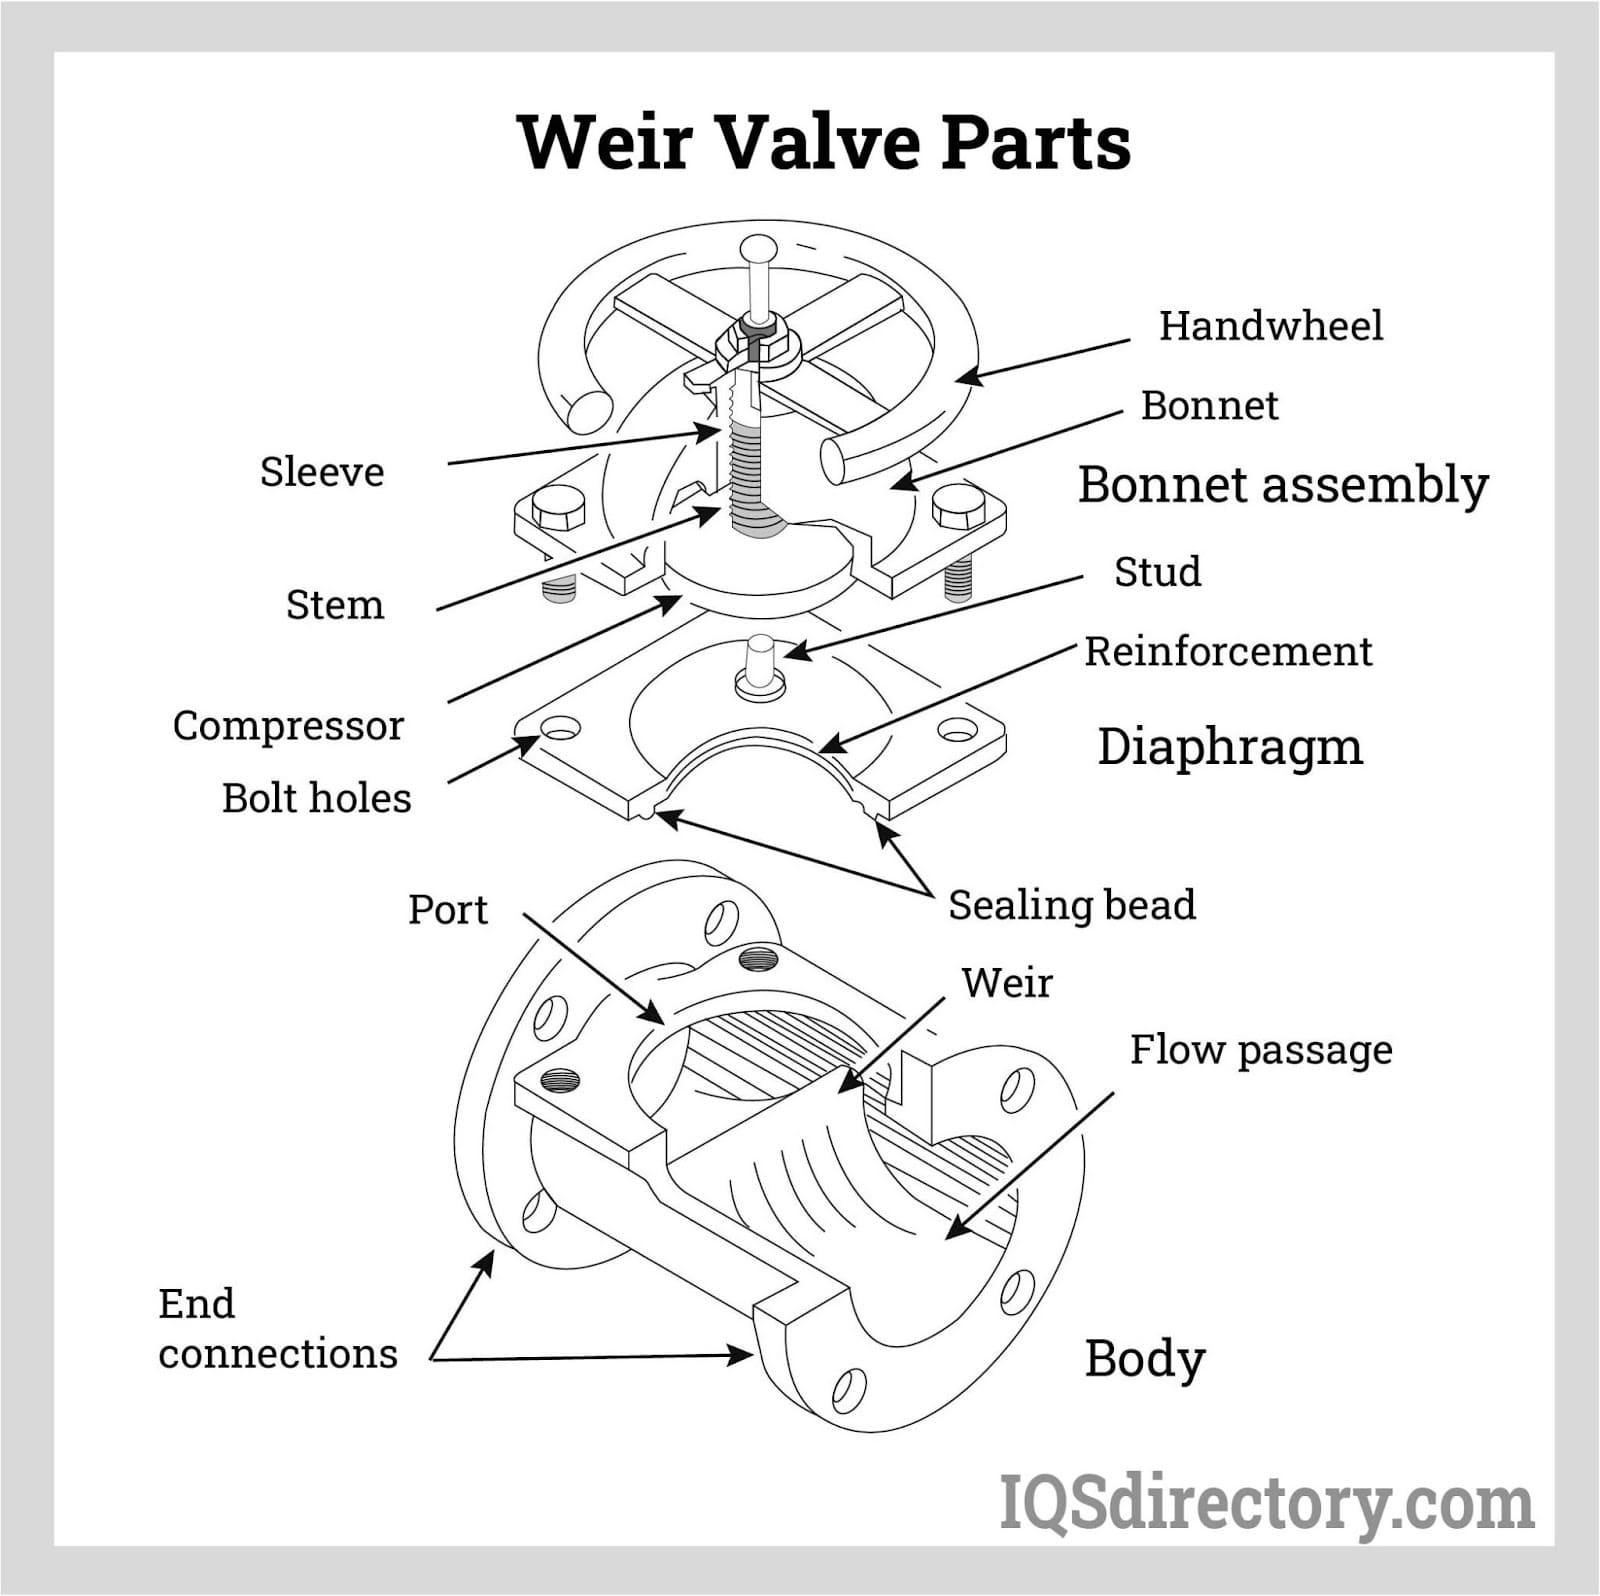 weir valve parts